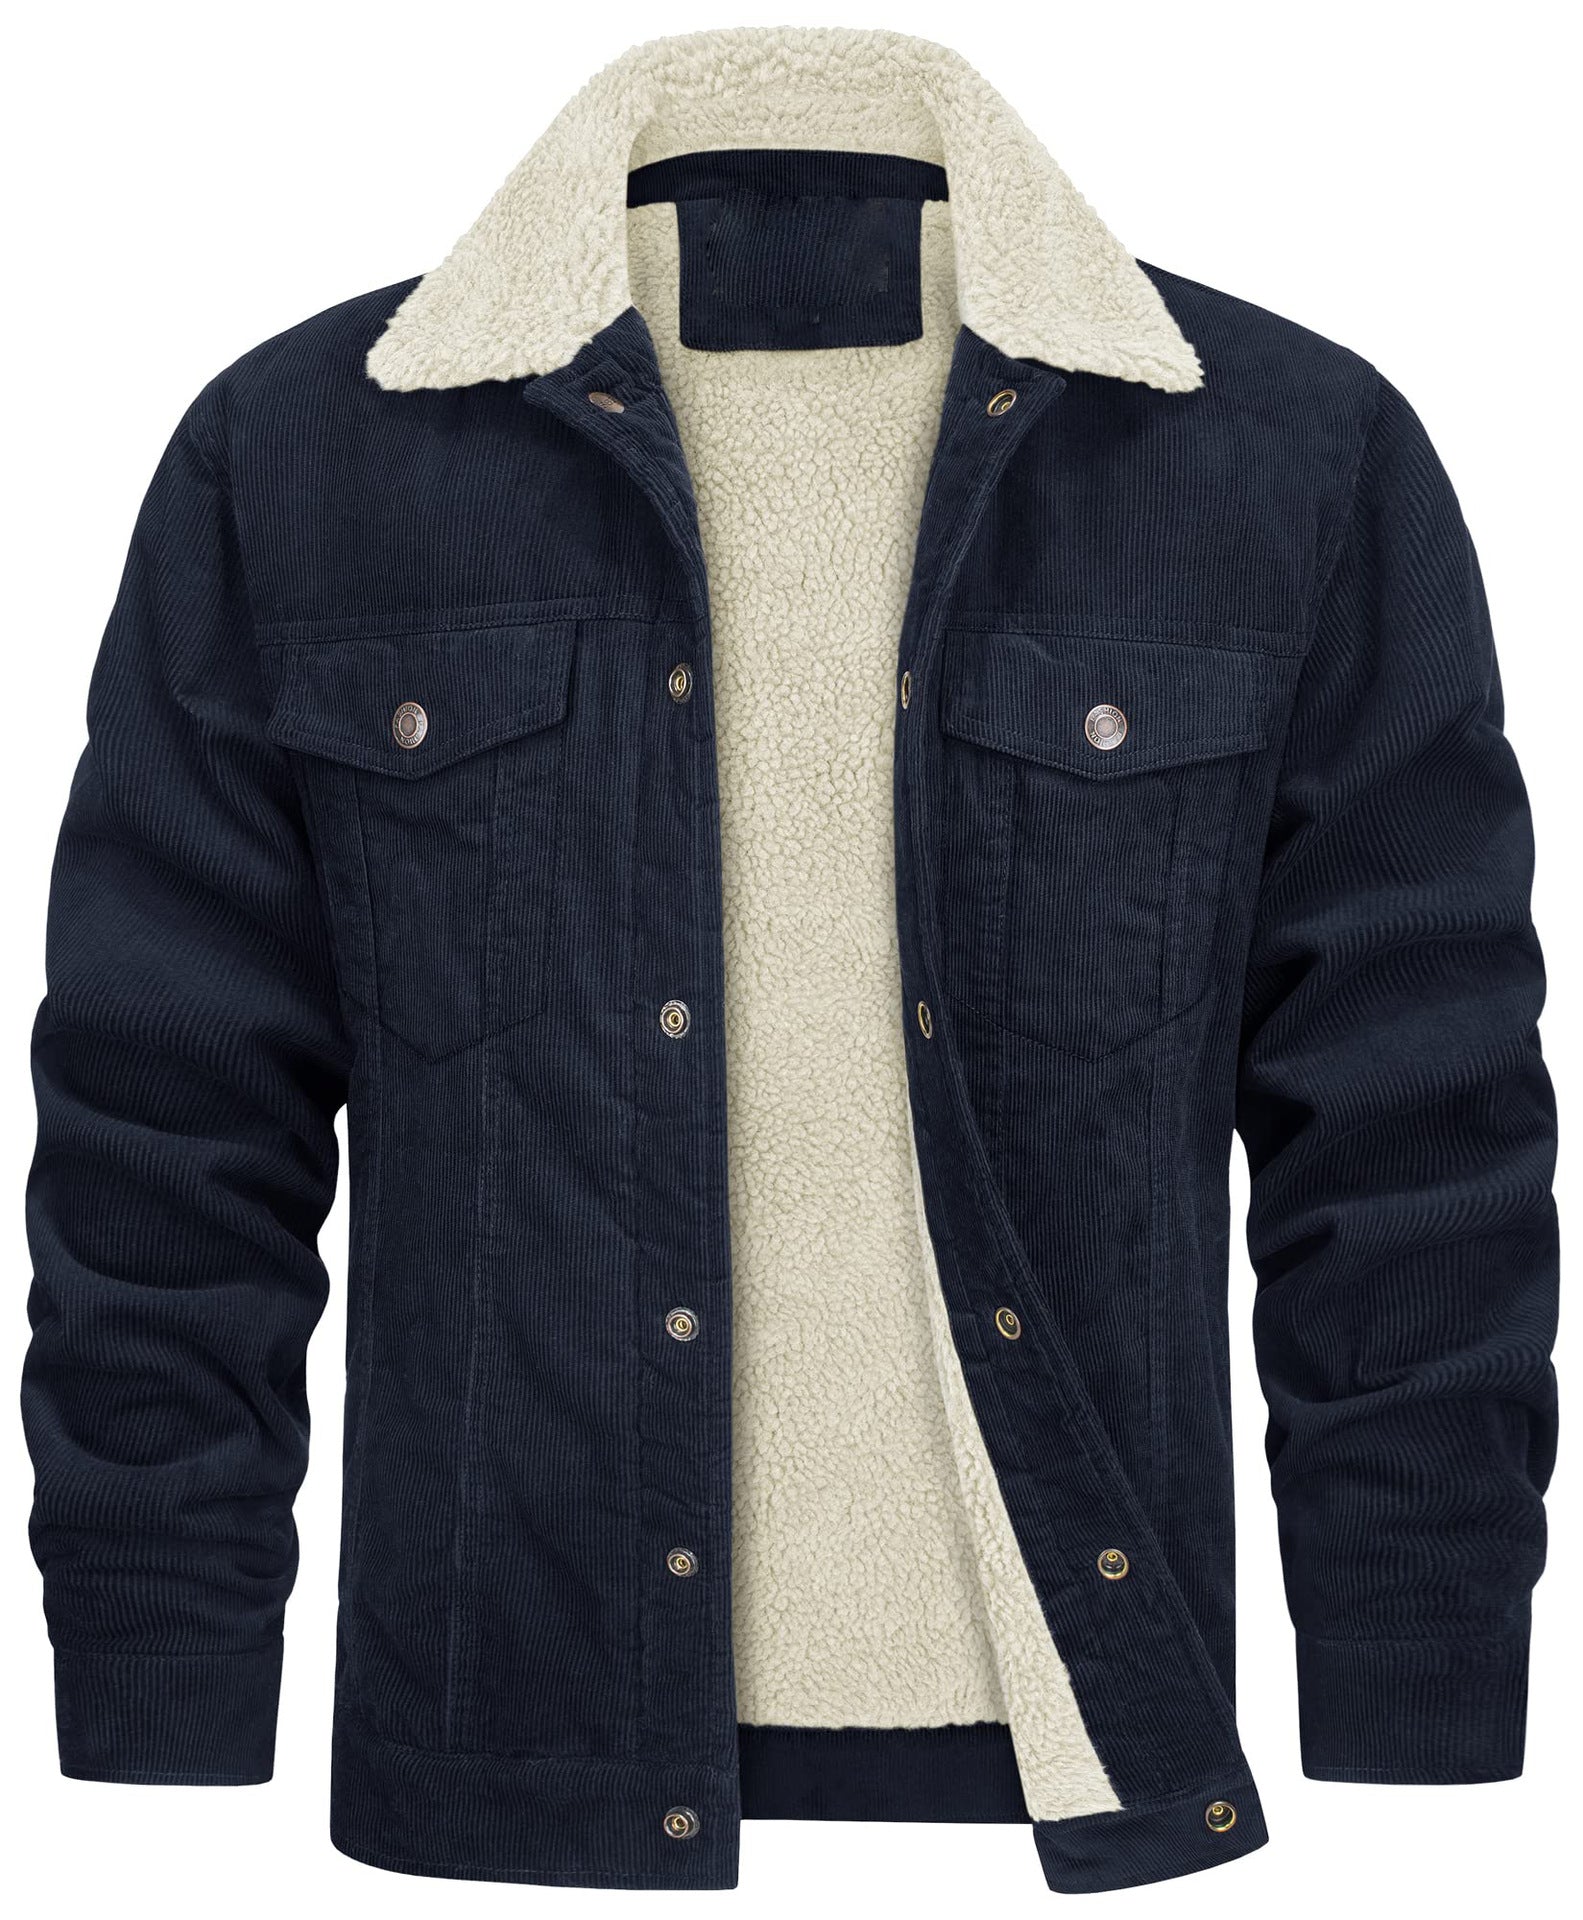 Corduroy Lapel Long Sleeve Plush Jacket for Men - Bargains4PenniesCorduroy Lapel Long Sleeve Plush Jacket for MenBargains4Pennies